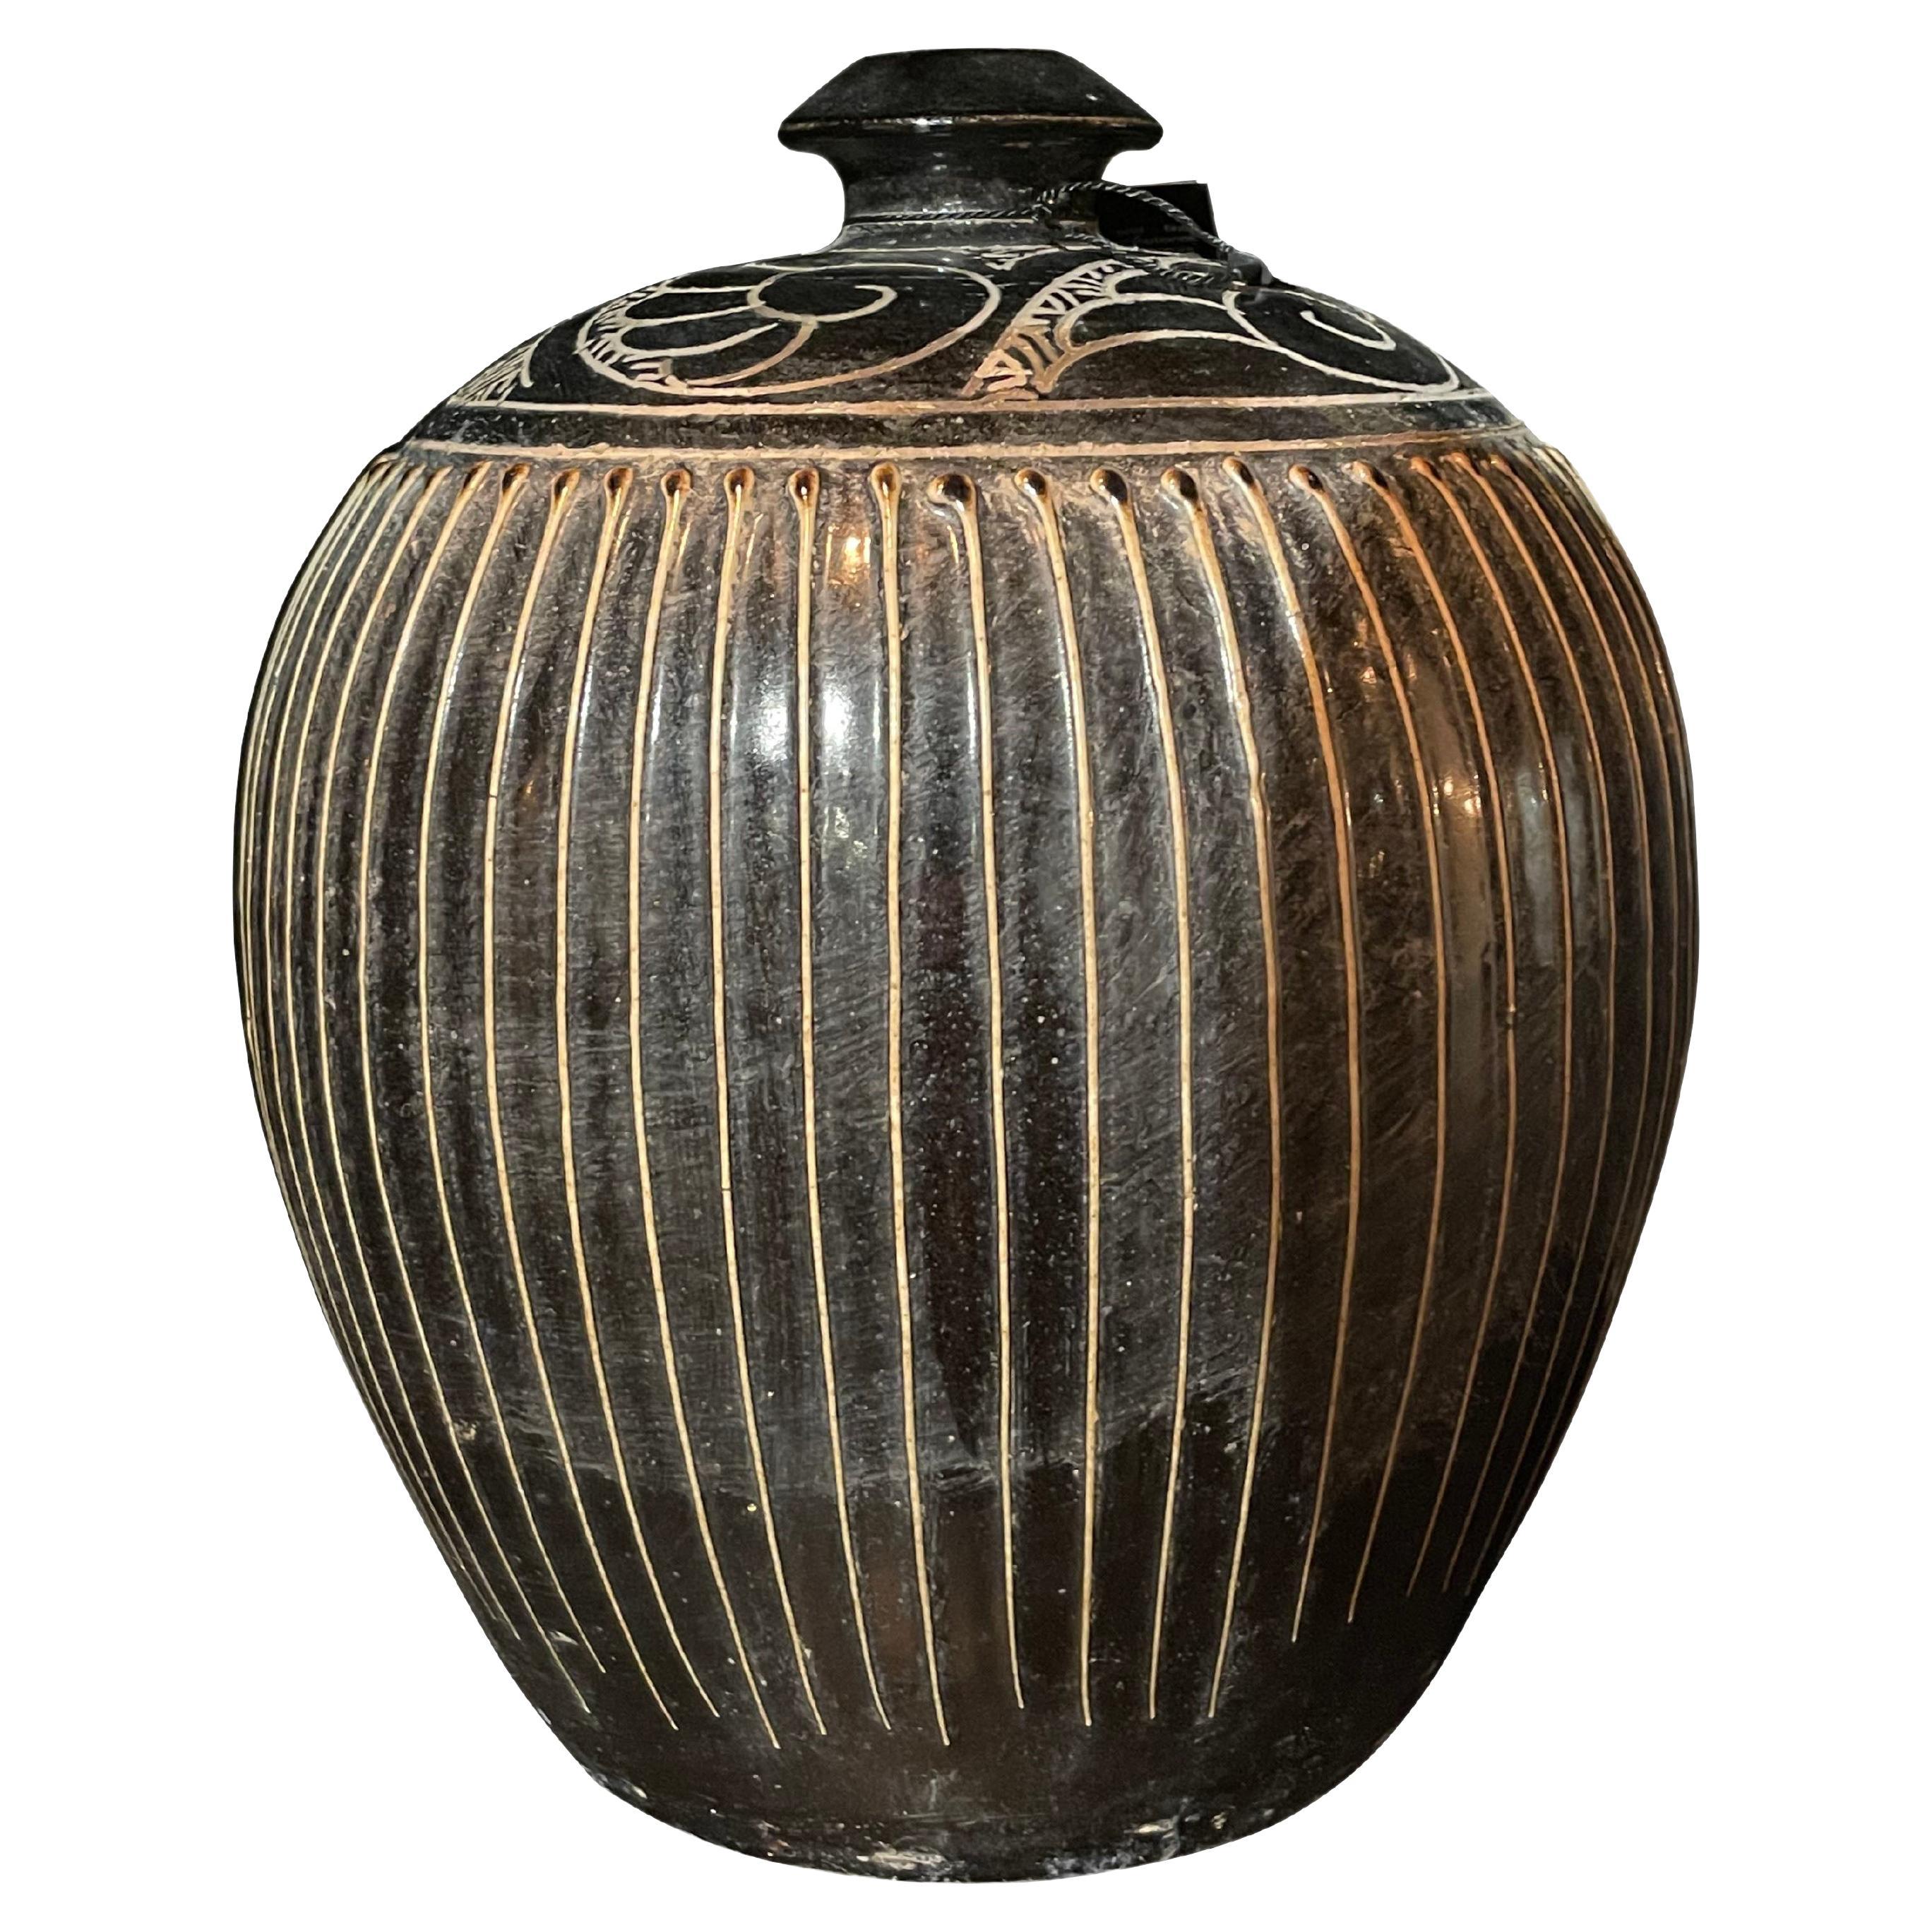 Vase à rayures dorées et noires, Chine, contemporain